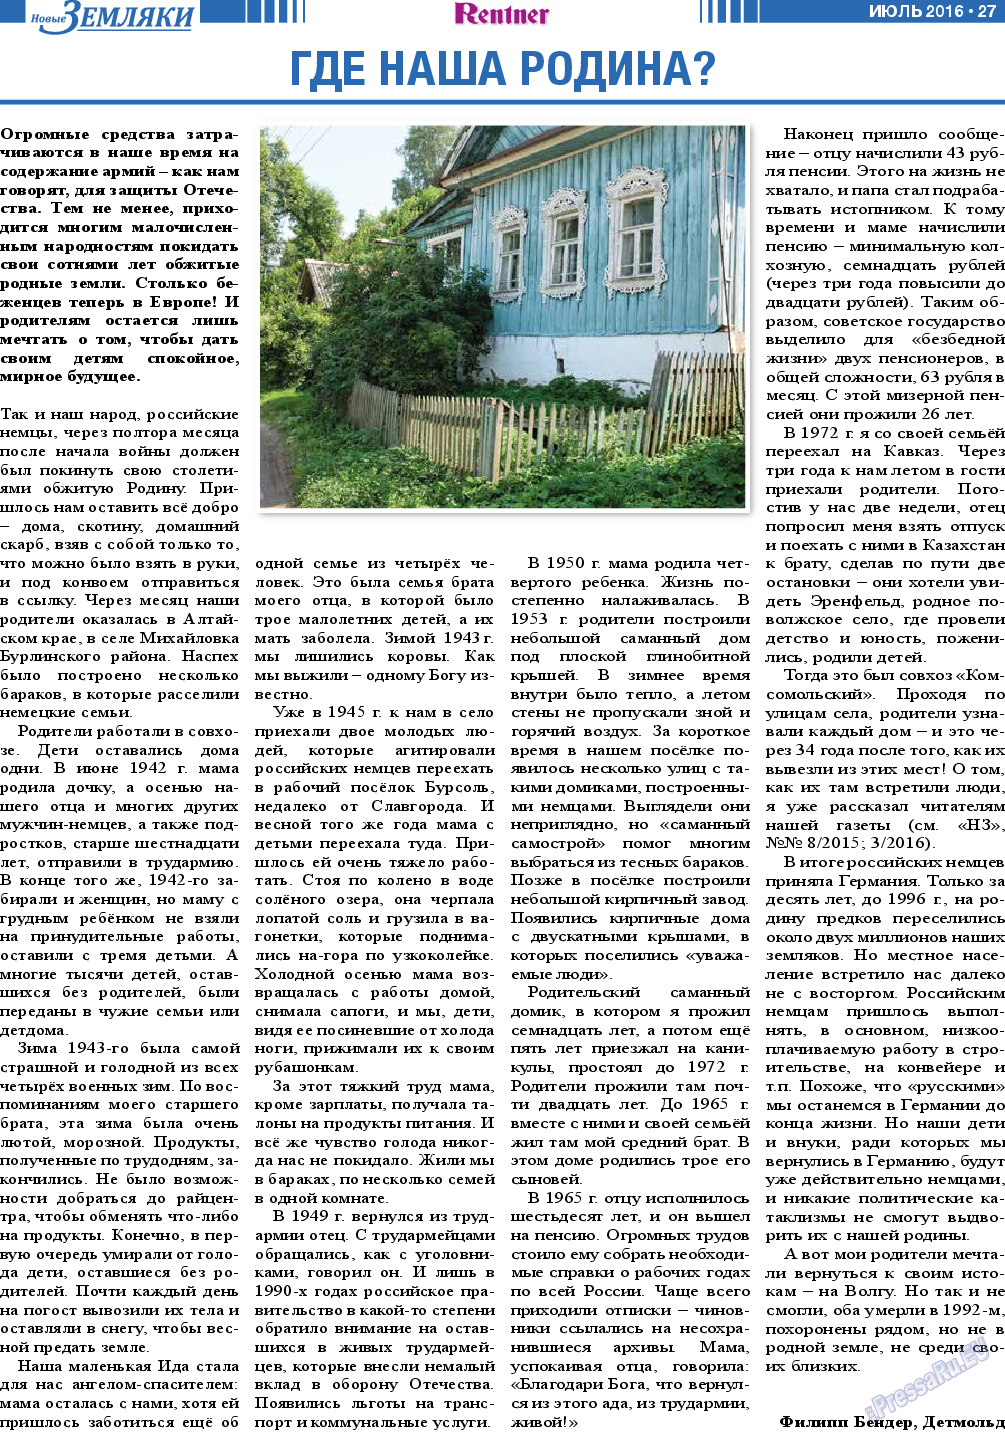 Новые Земляки, газета. 2016 №7 стр.27